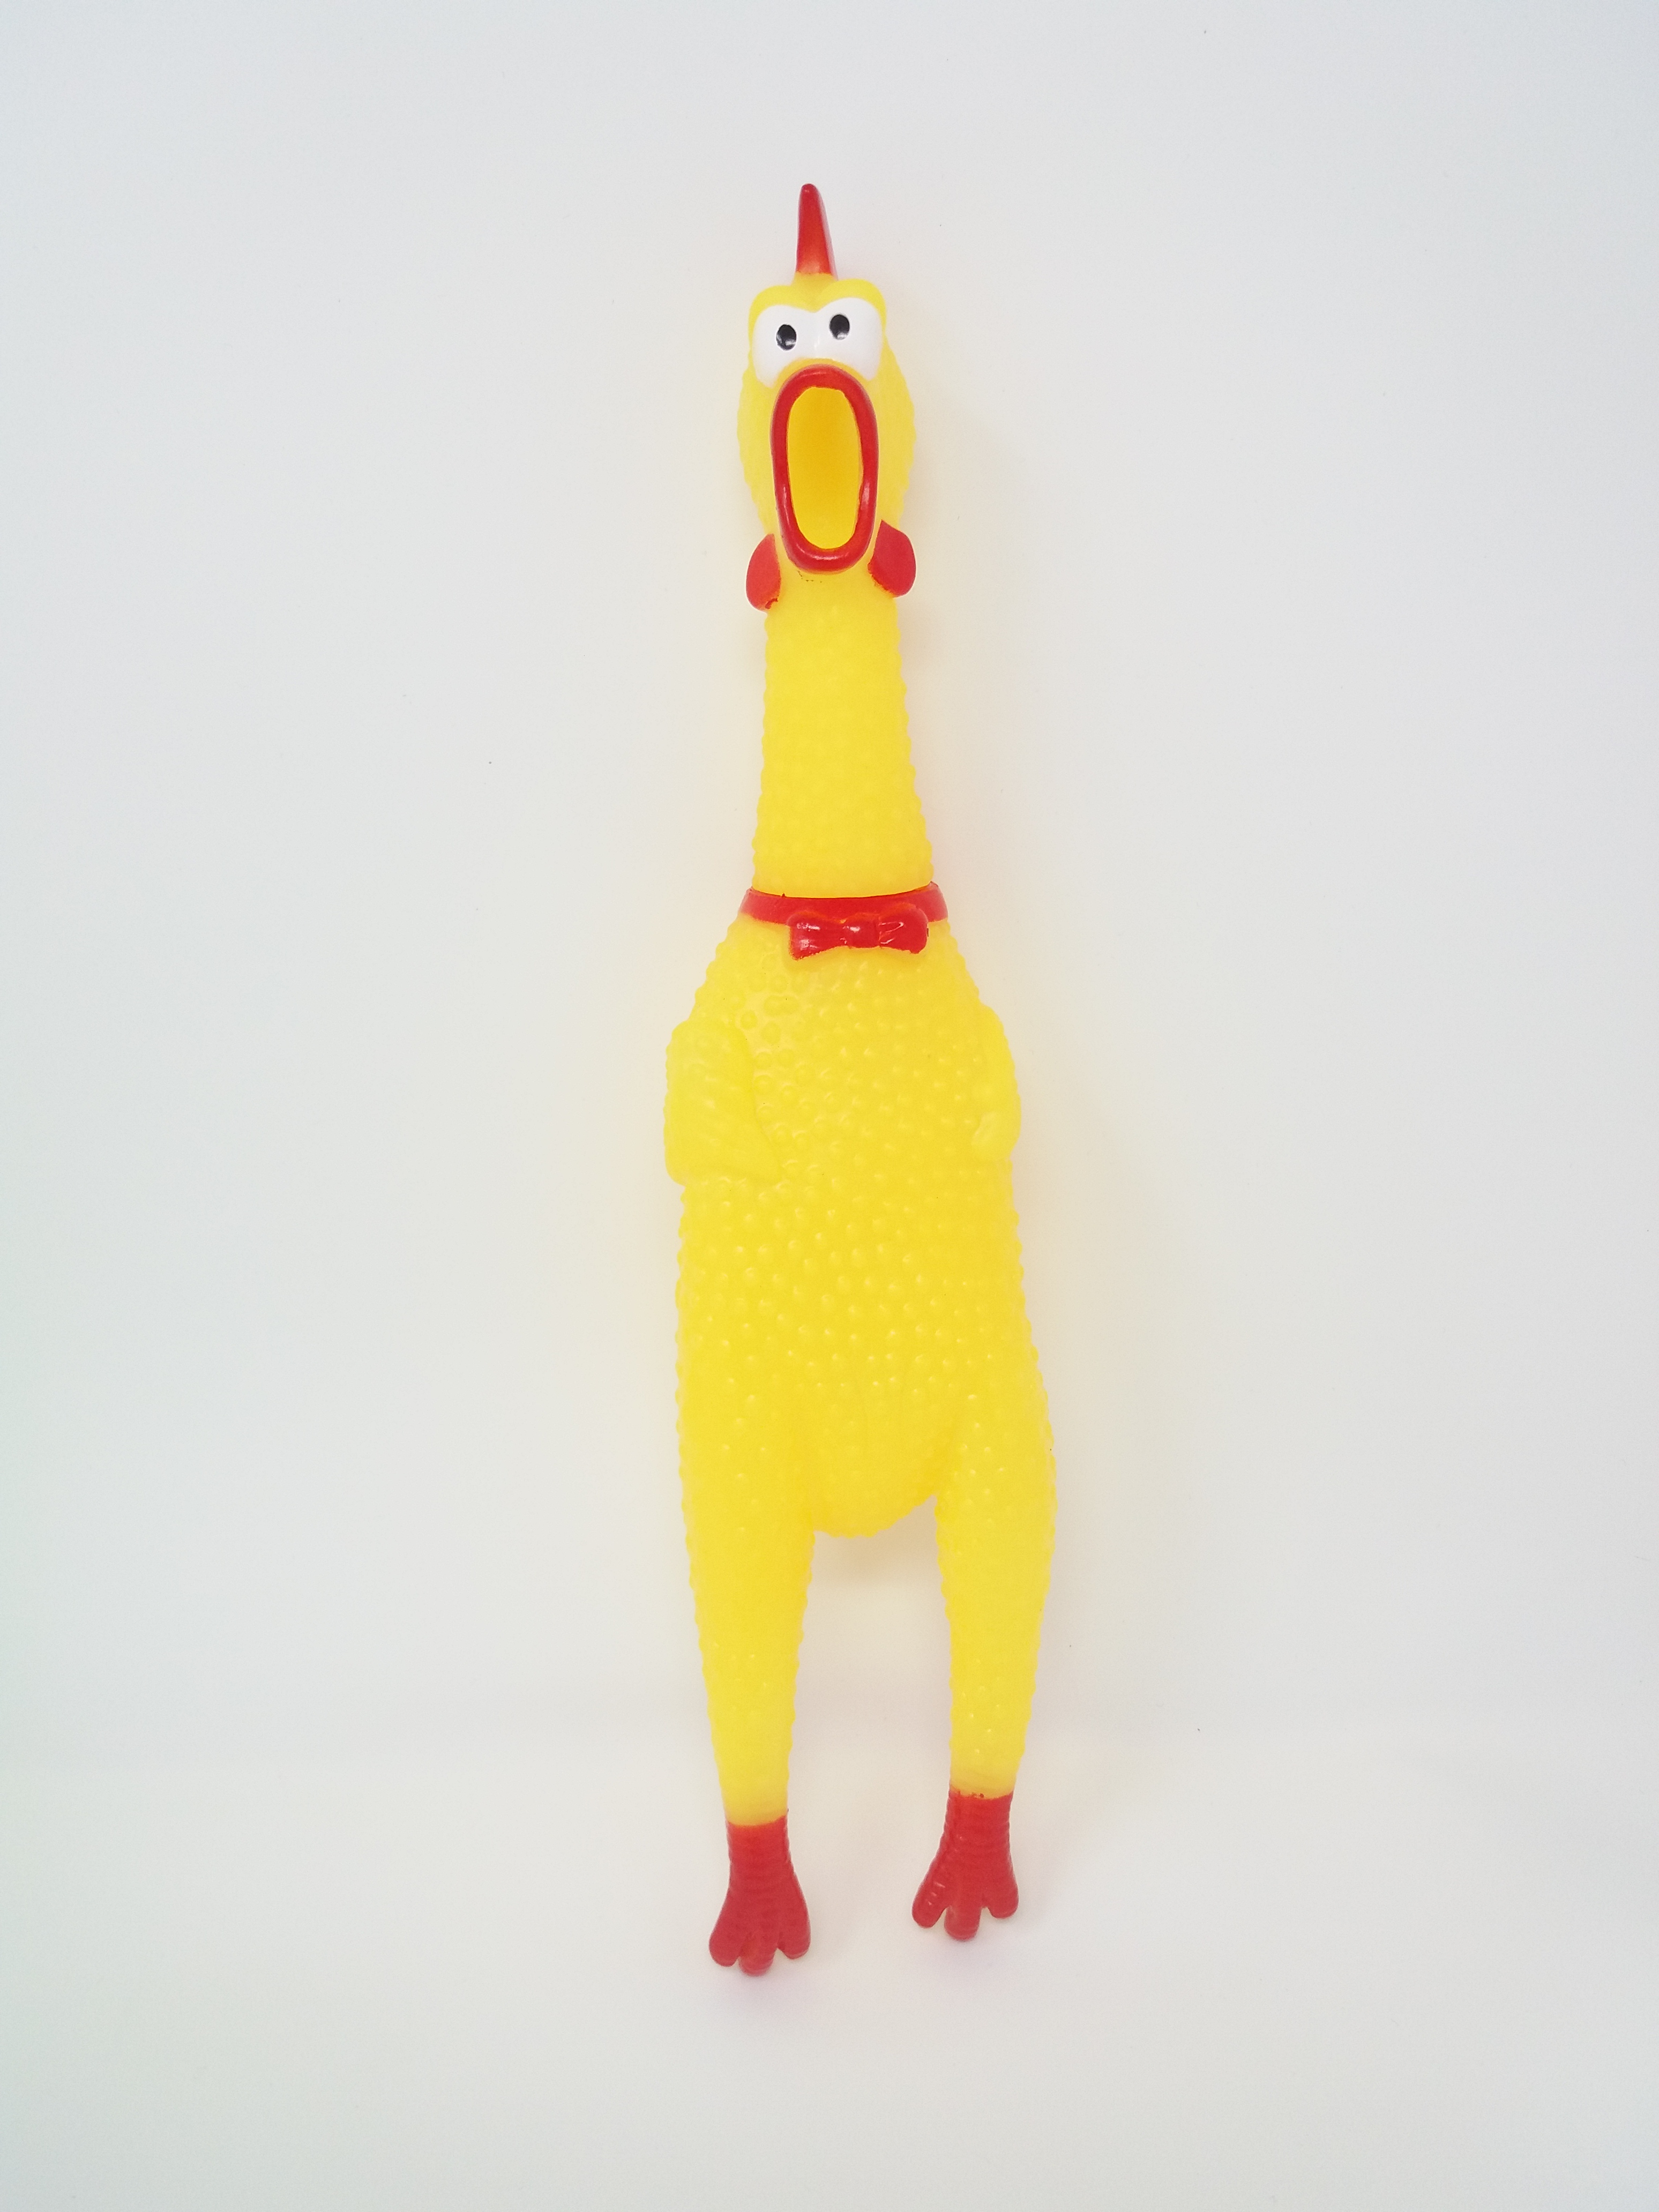 Kandytoys Squawking Plastic Chicken Toy